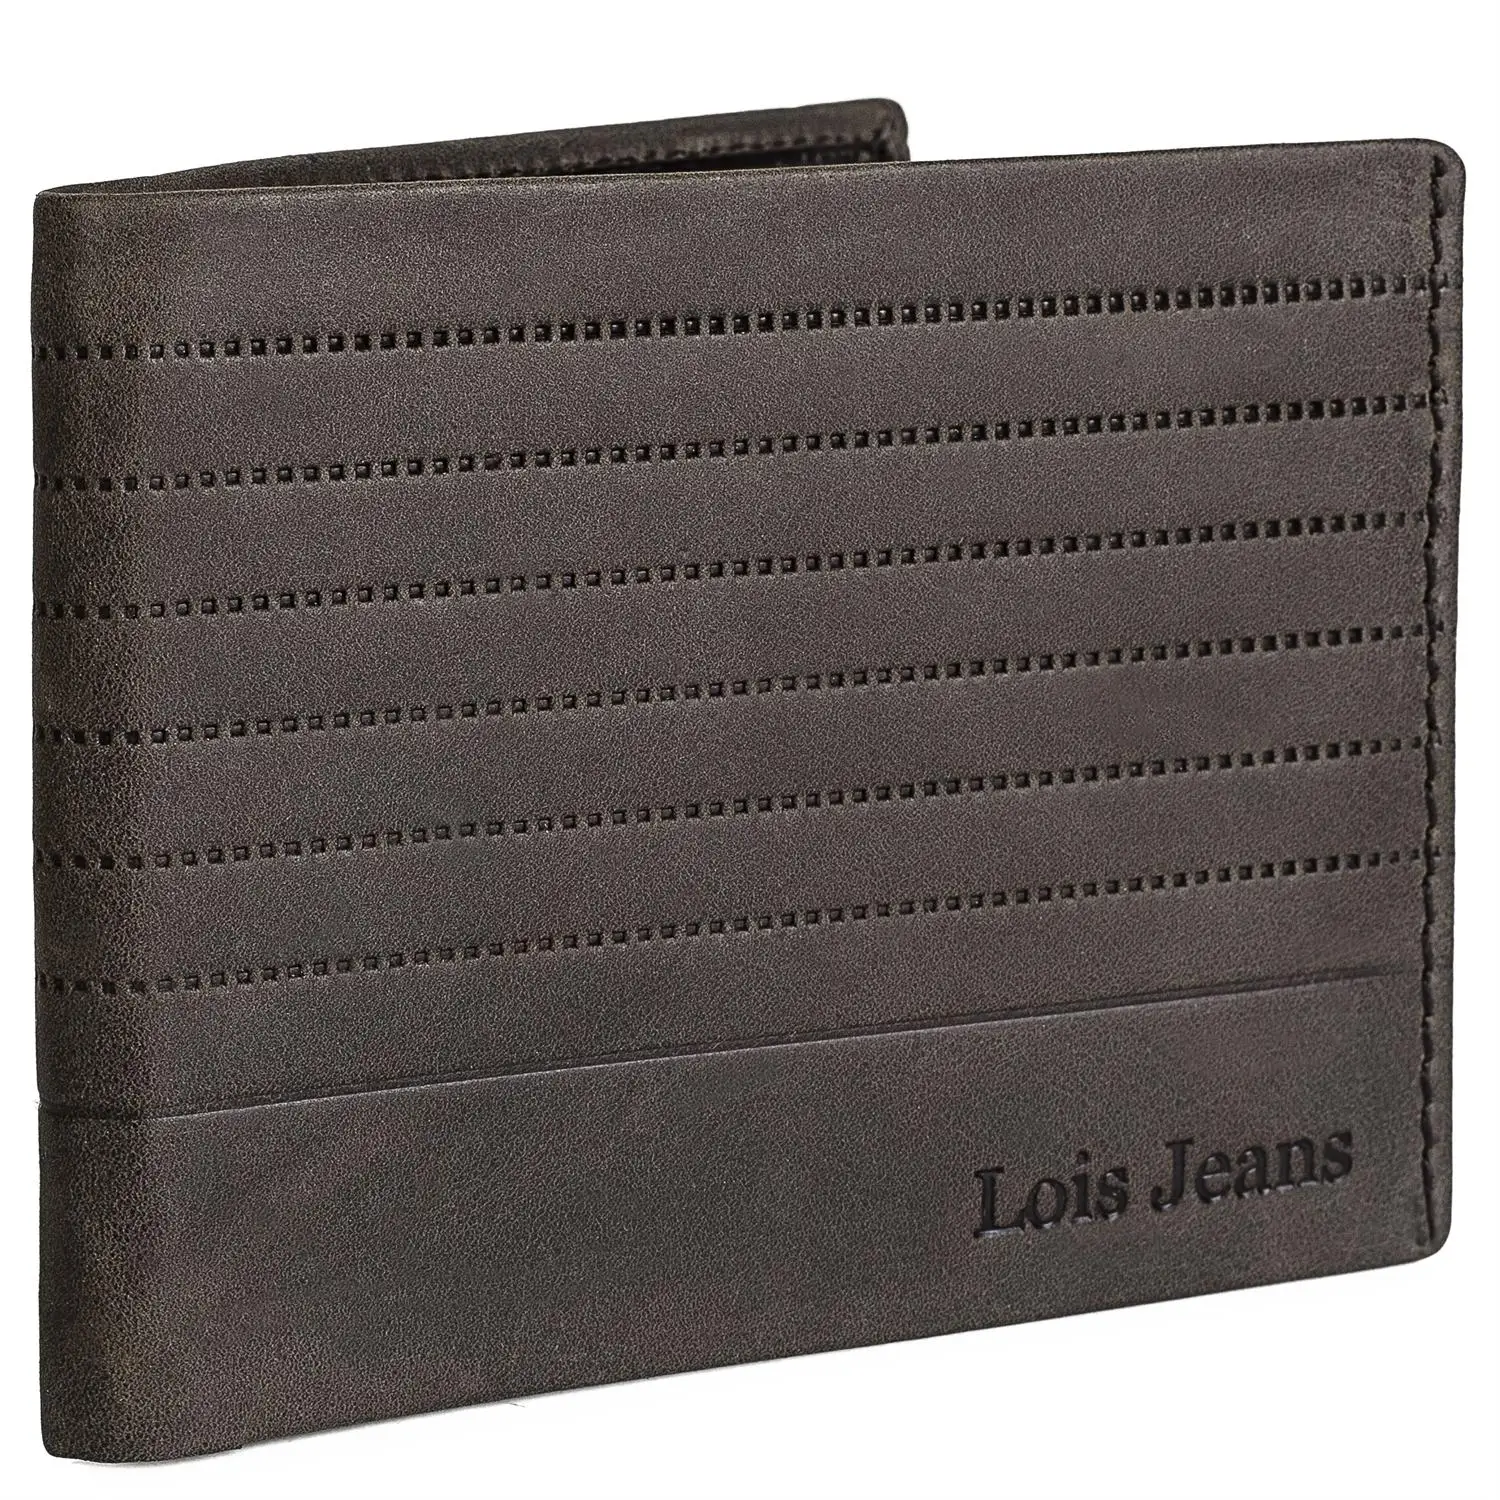 Lois рыцарский кошелек мужской кожаный бумажник и держатель для карт доступны в 3 цветах 202207 - Color: Brown